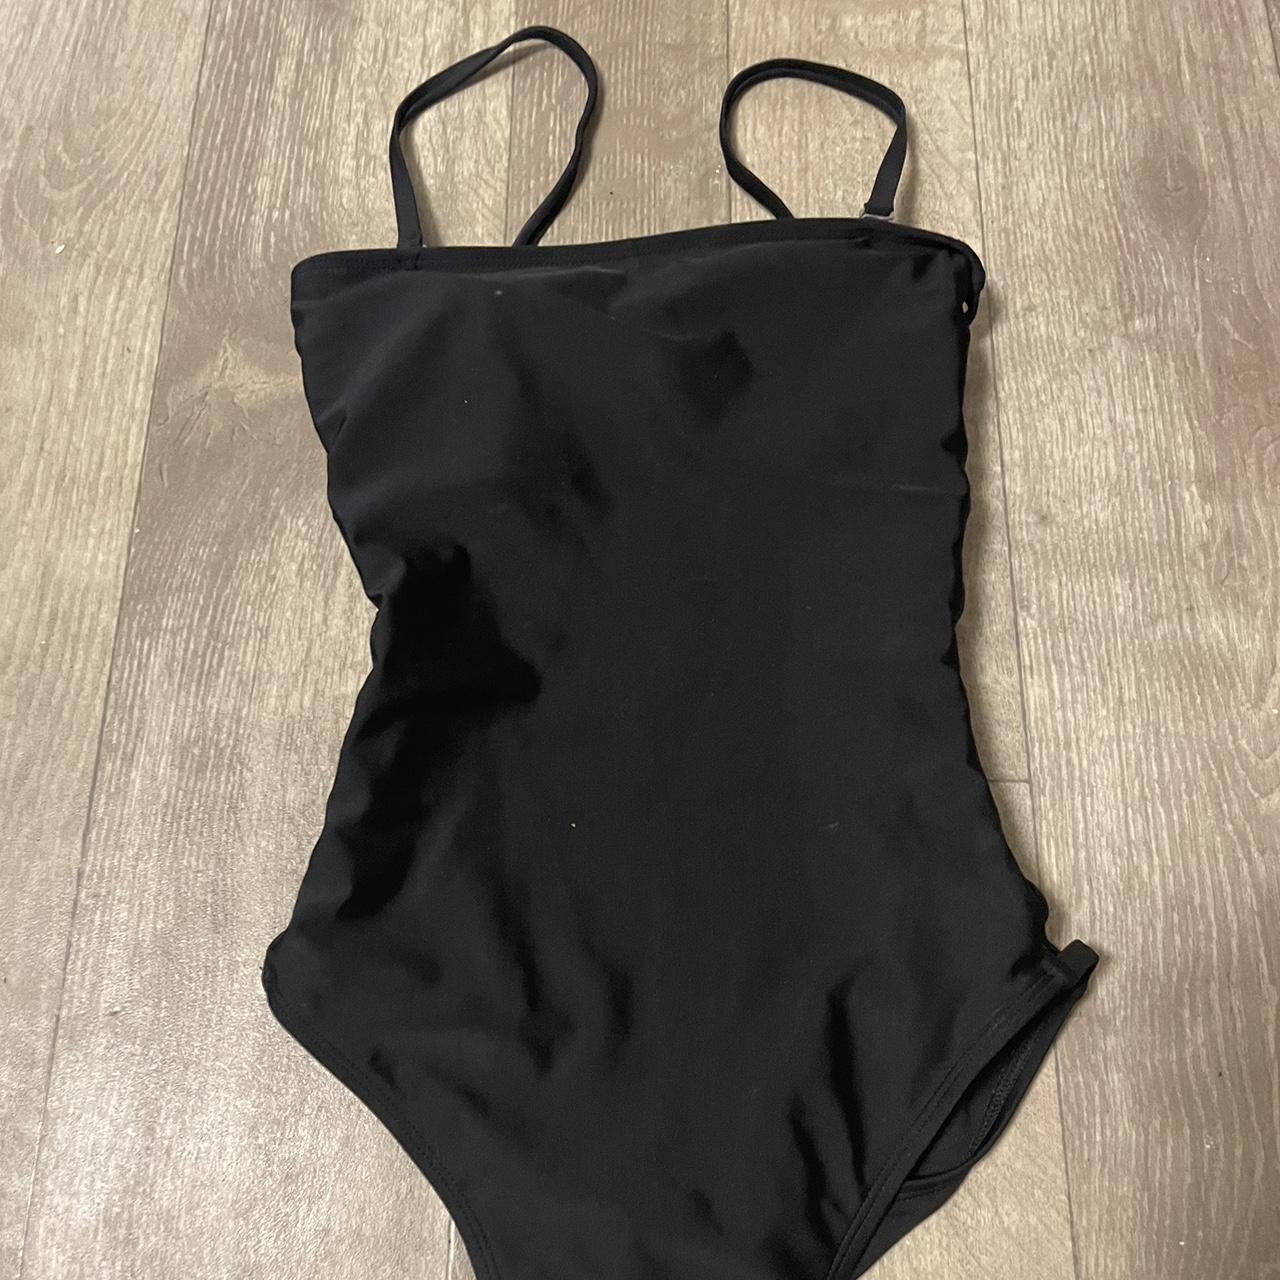 Aeropostale Women's Black Swimsuit-one-piece | Depop